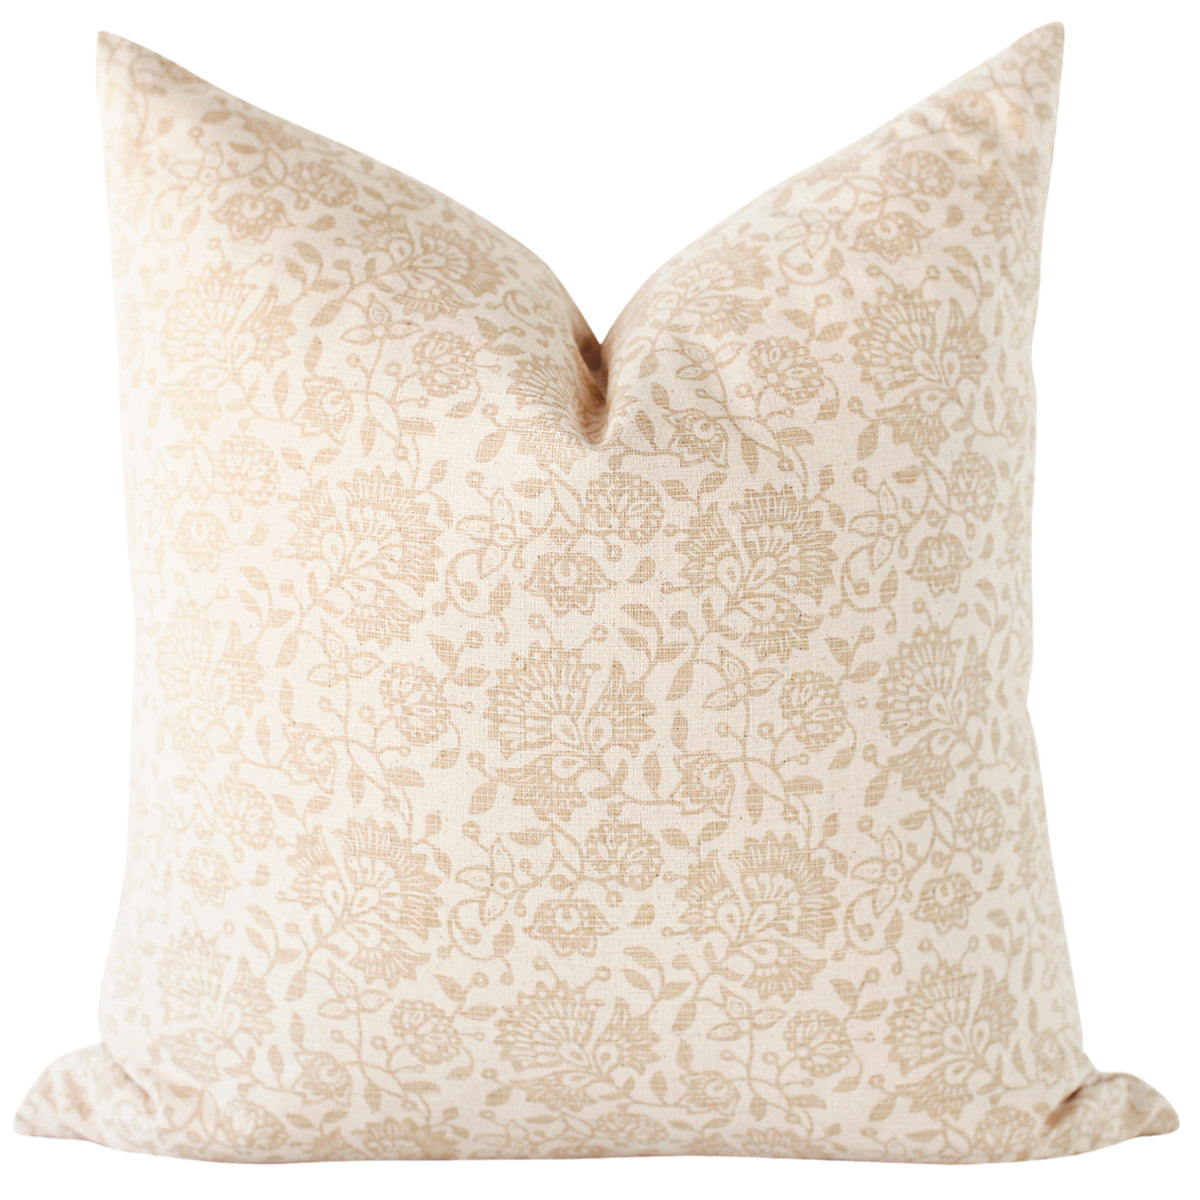 Olsen Pillow Cover